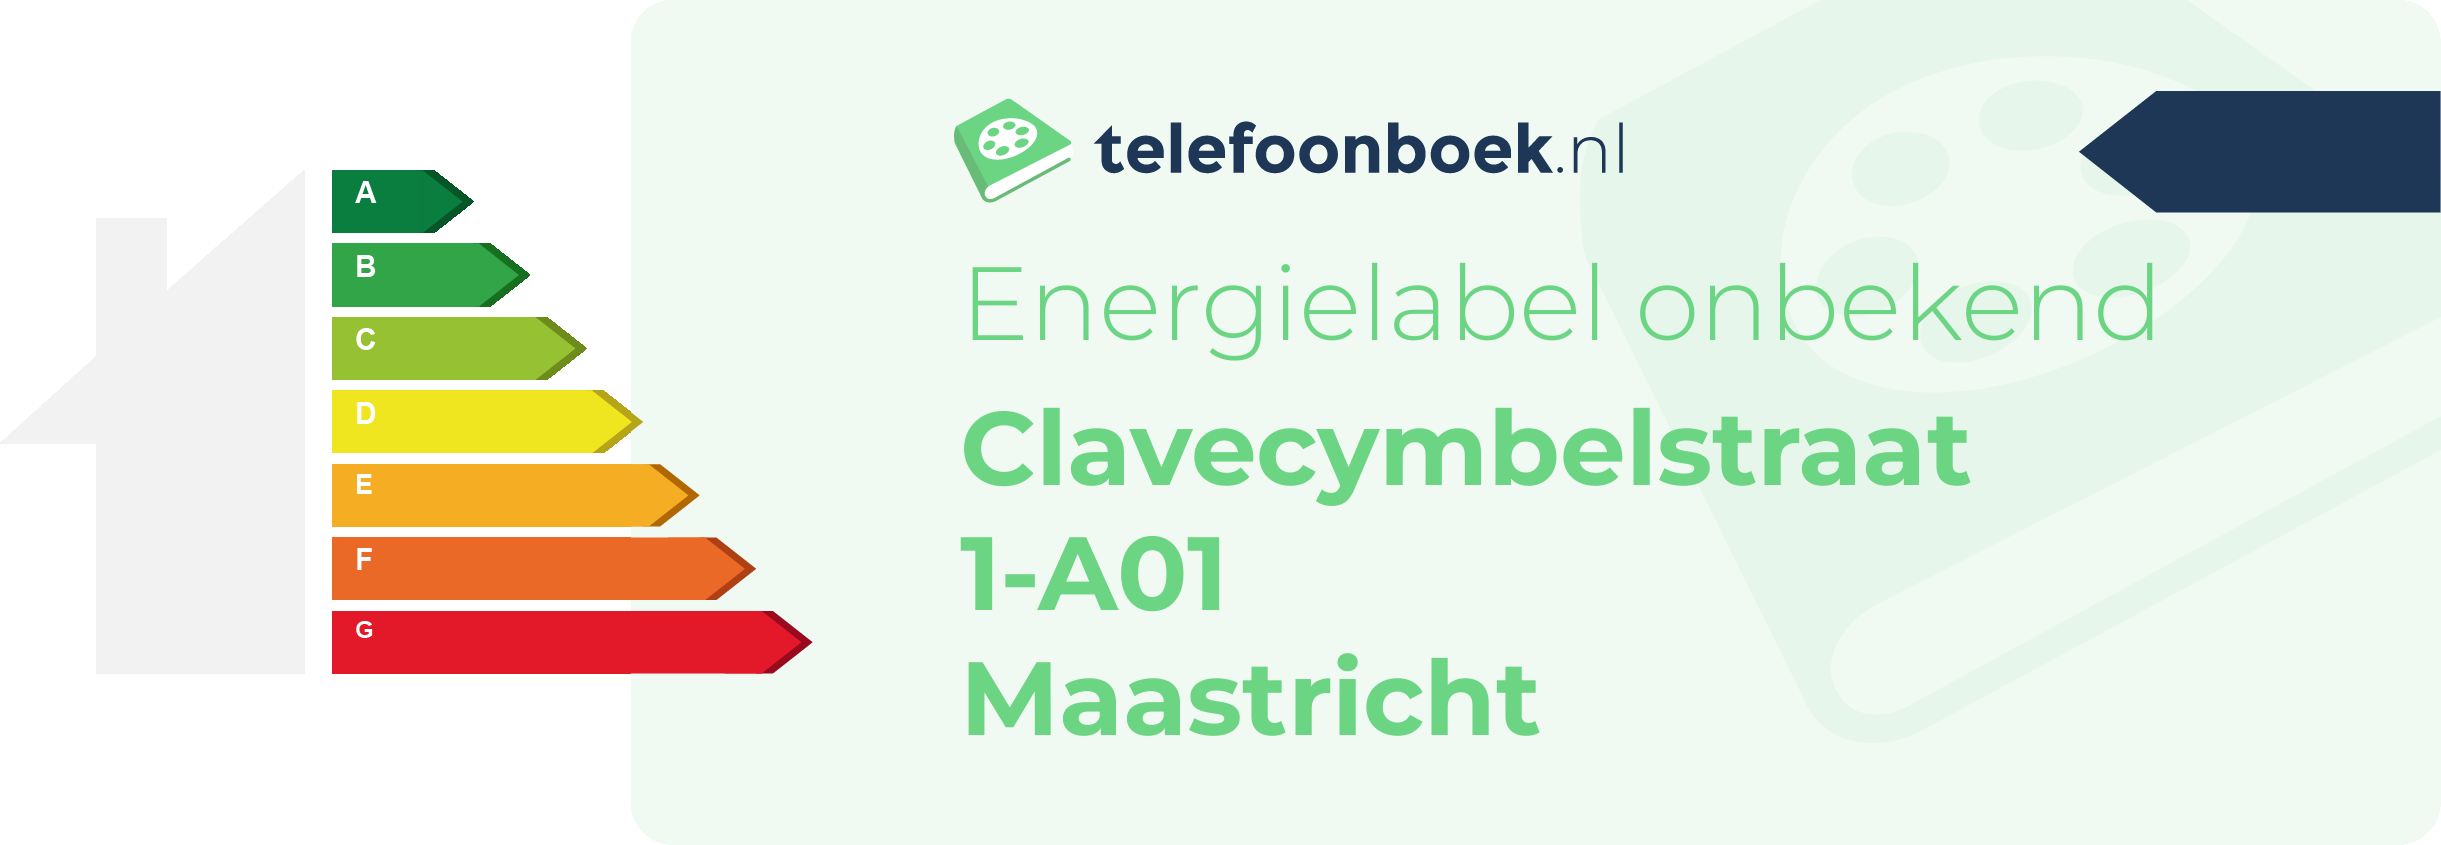 Energielabel Clavecymbelstraat 1-A01 Maastricht